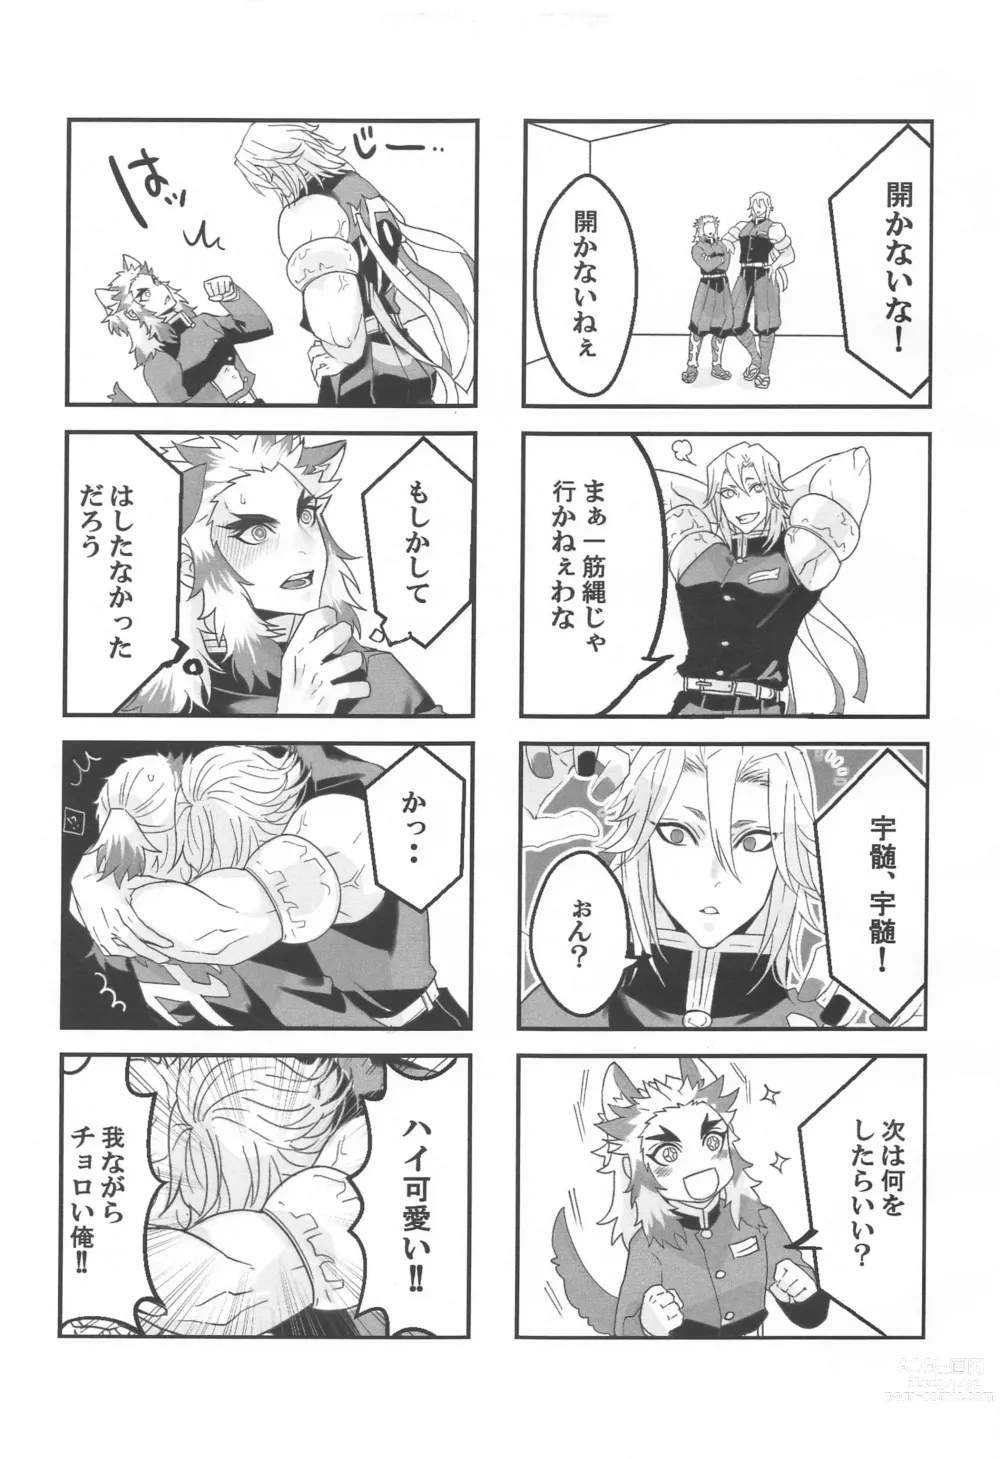 Page 6 of doujinshi ●● Shinai to Derarenai Heya